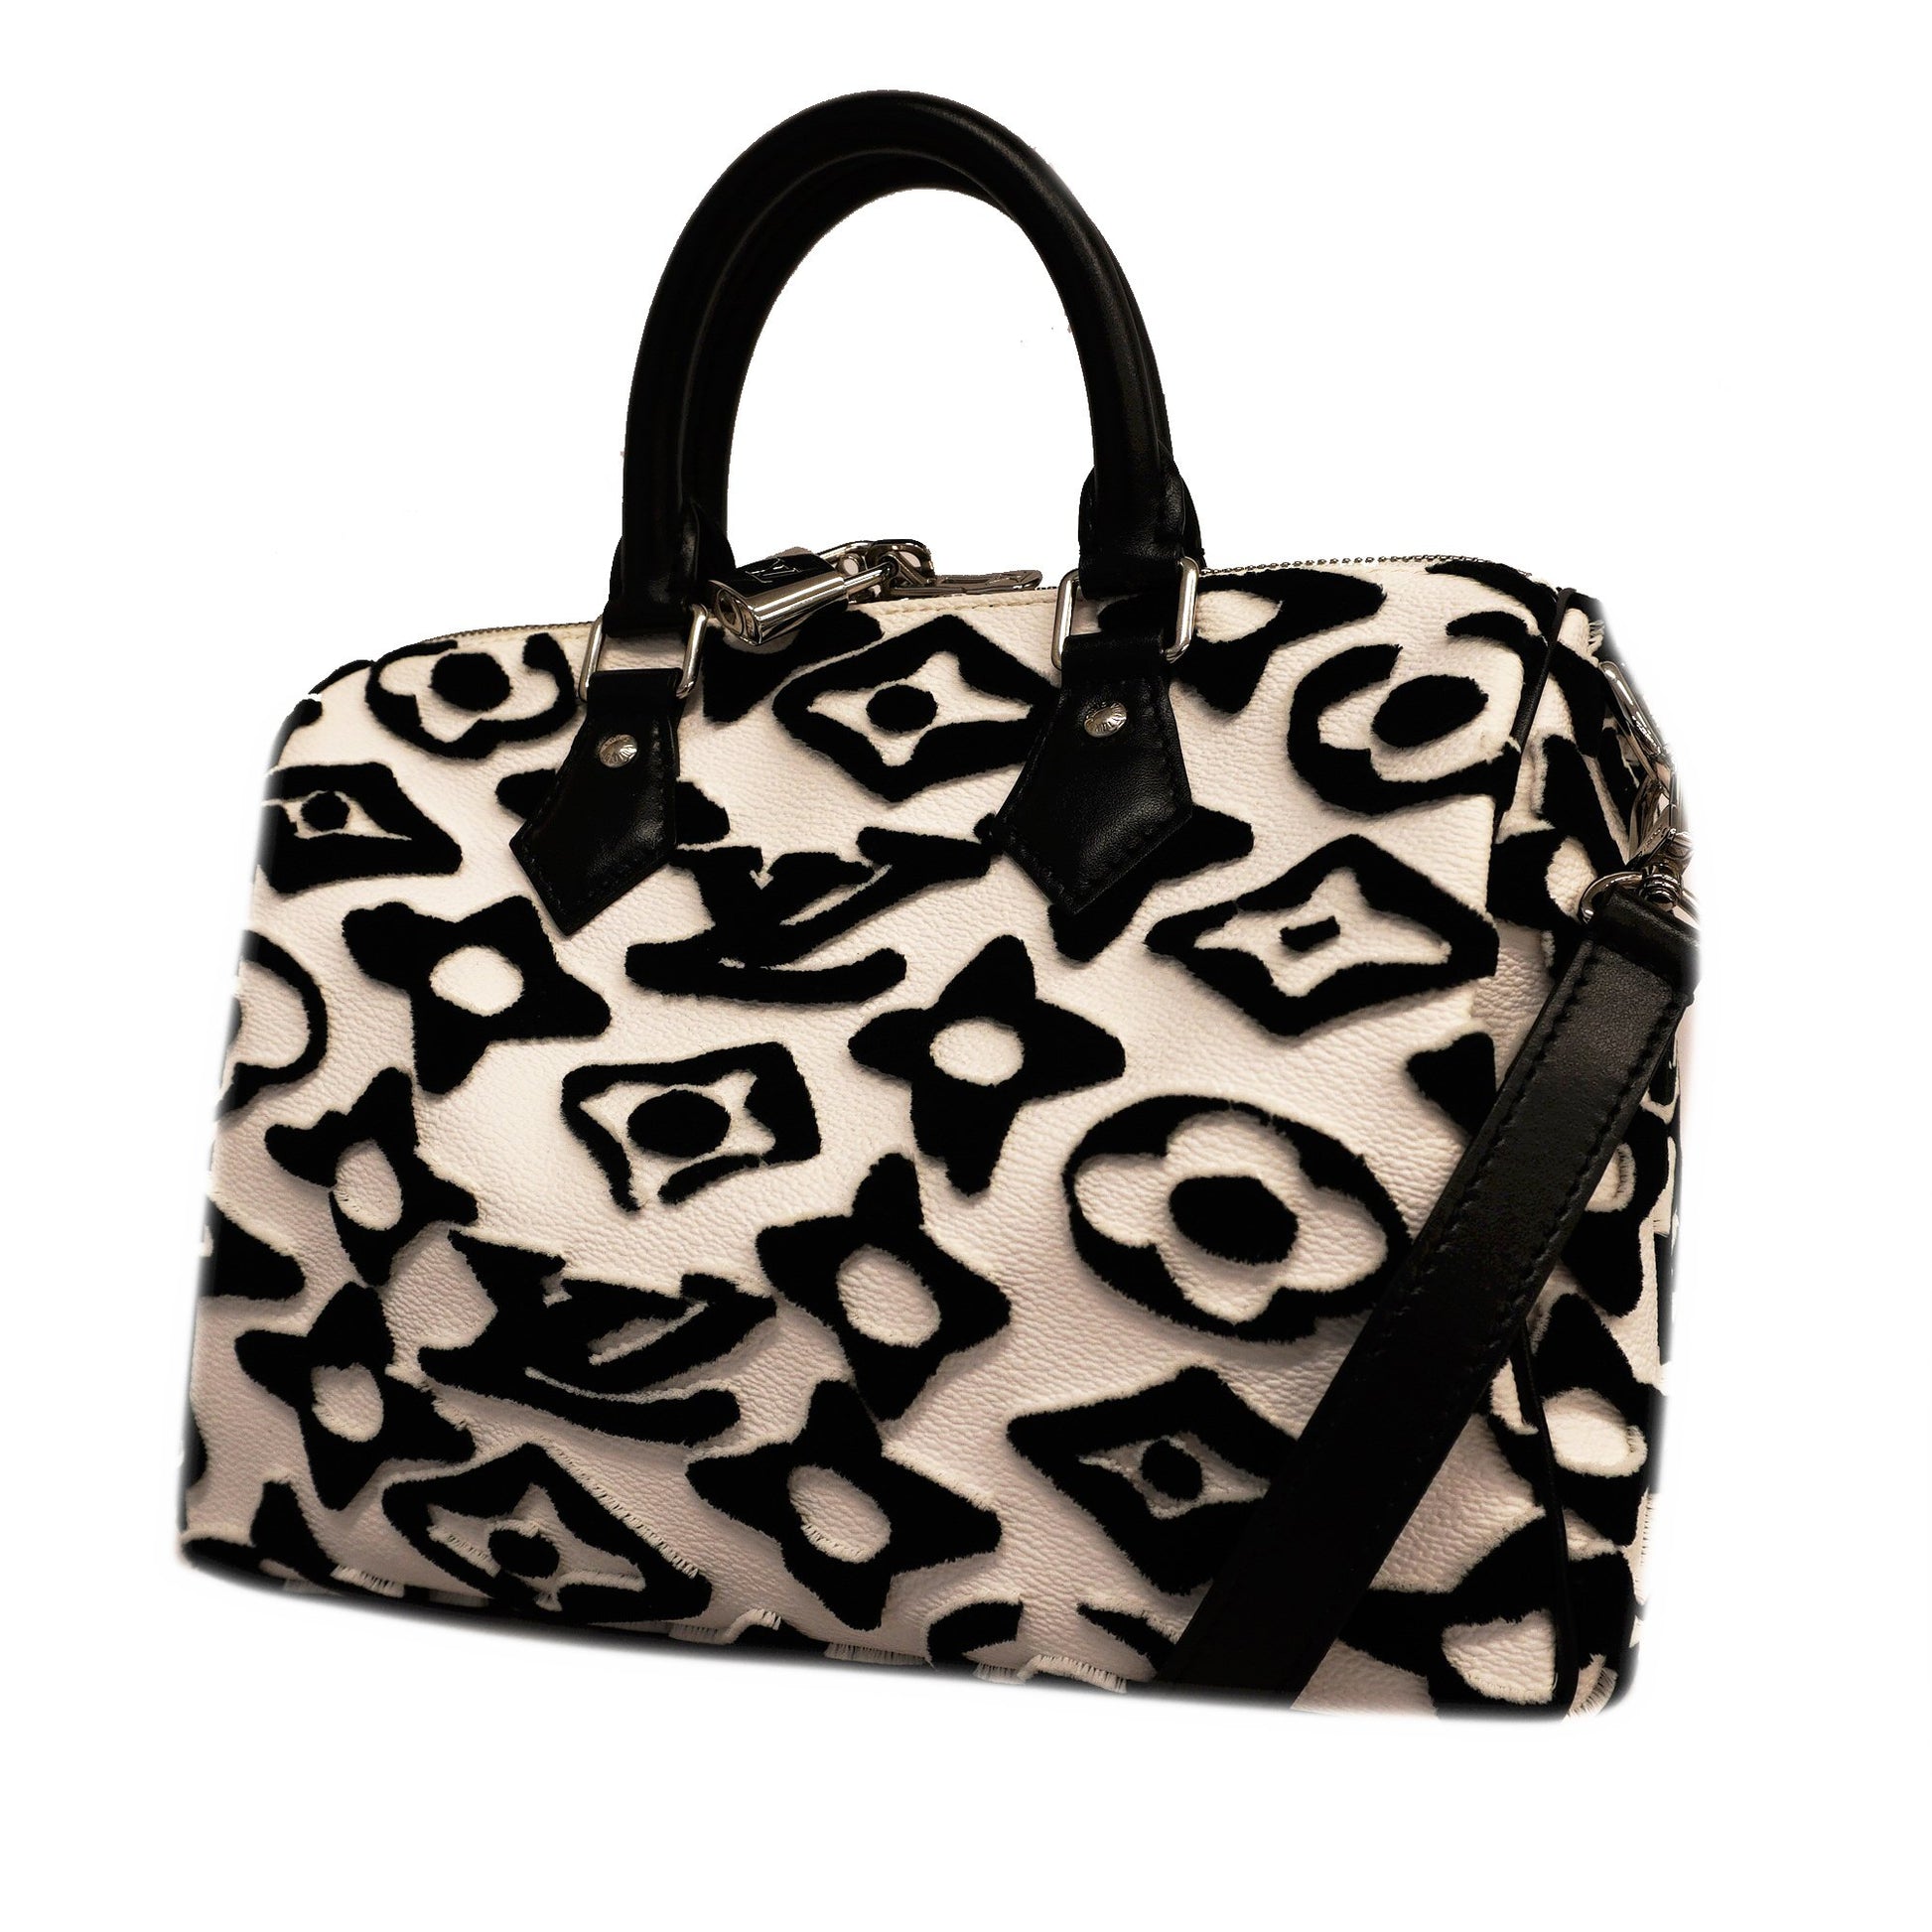 Louis Vuitton White/Black Urs Fischer Tufted Monogram Speedy Bandouliere 25  Bag